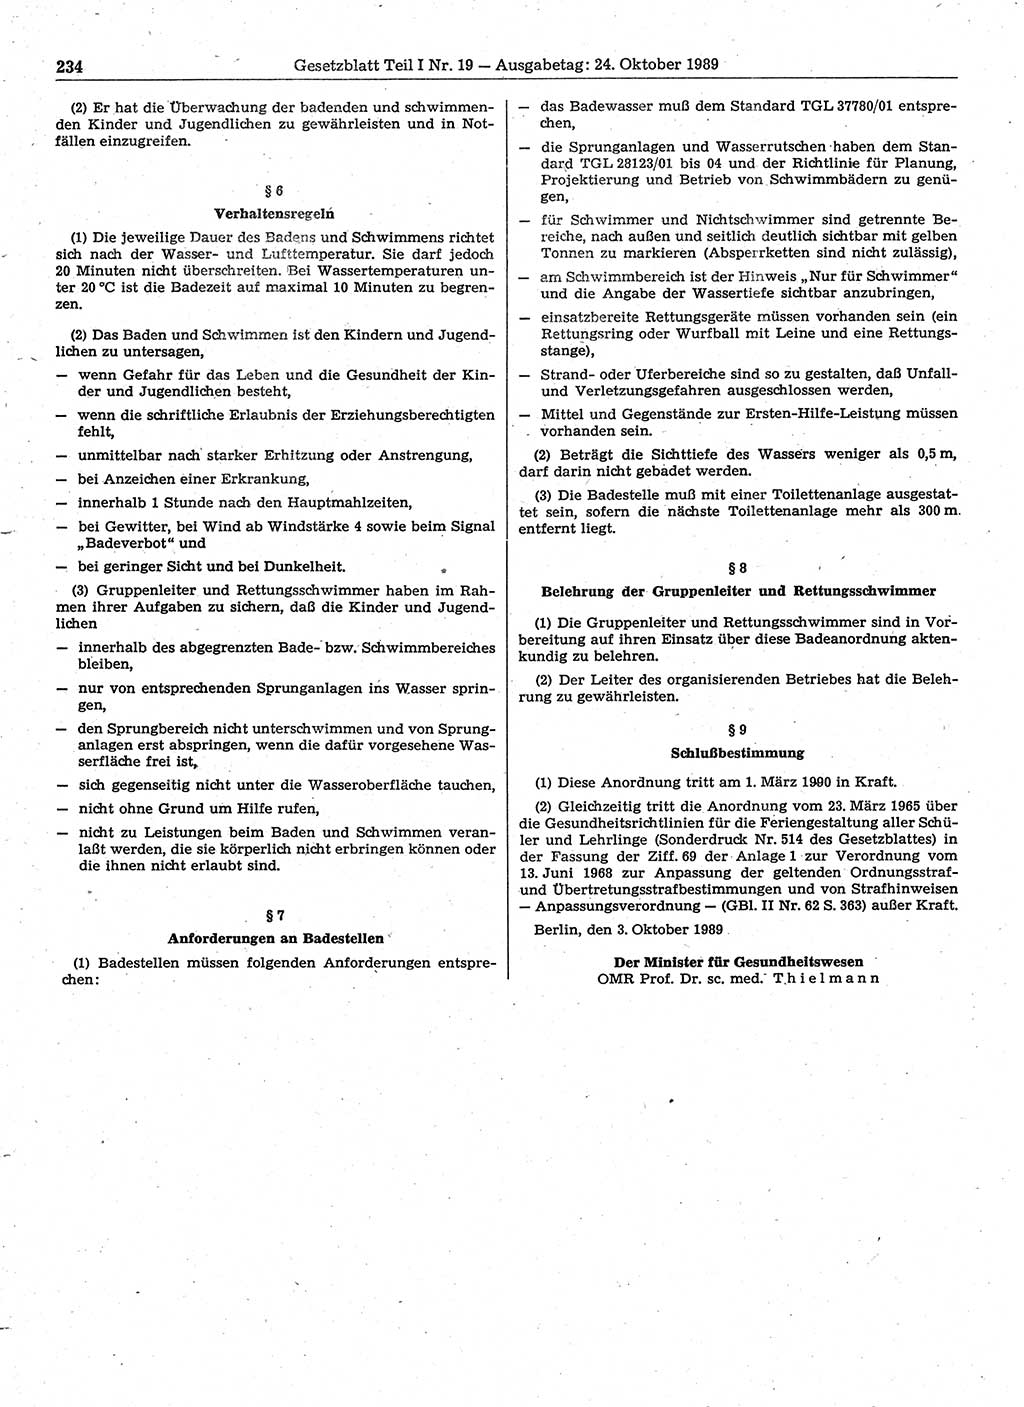 Gesetzblatt (GBl.) der Deutschen Demokratischen Republik (DDR) Teil Ⅰ 1989, Seite 234 (GBl. DDR Ⅰ 1989, S. 234)